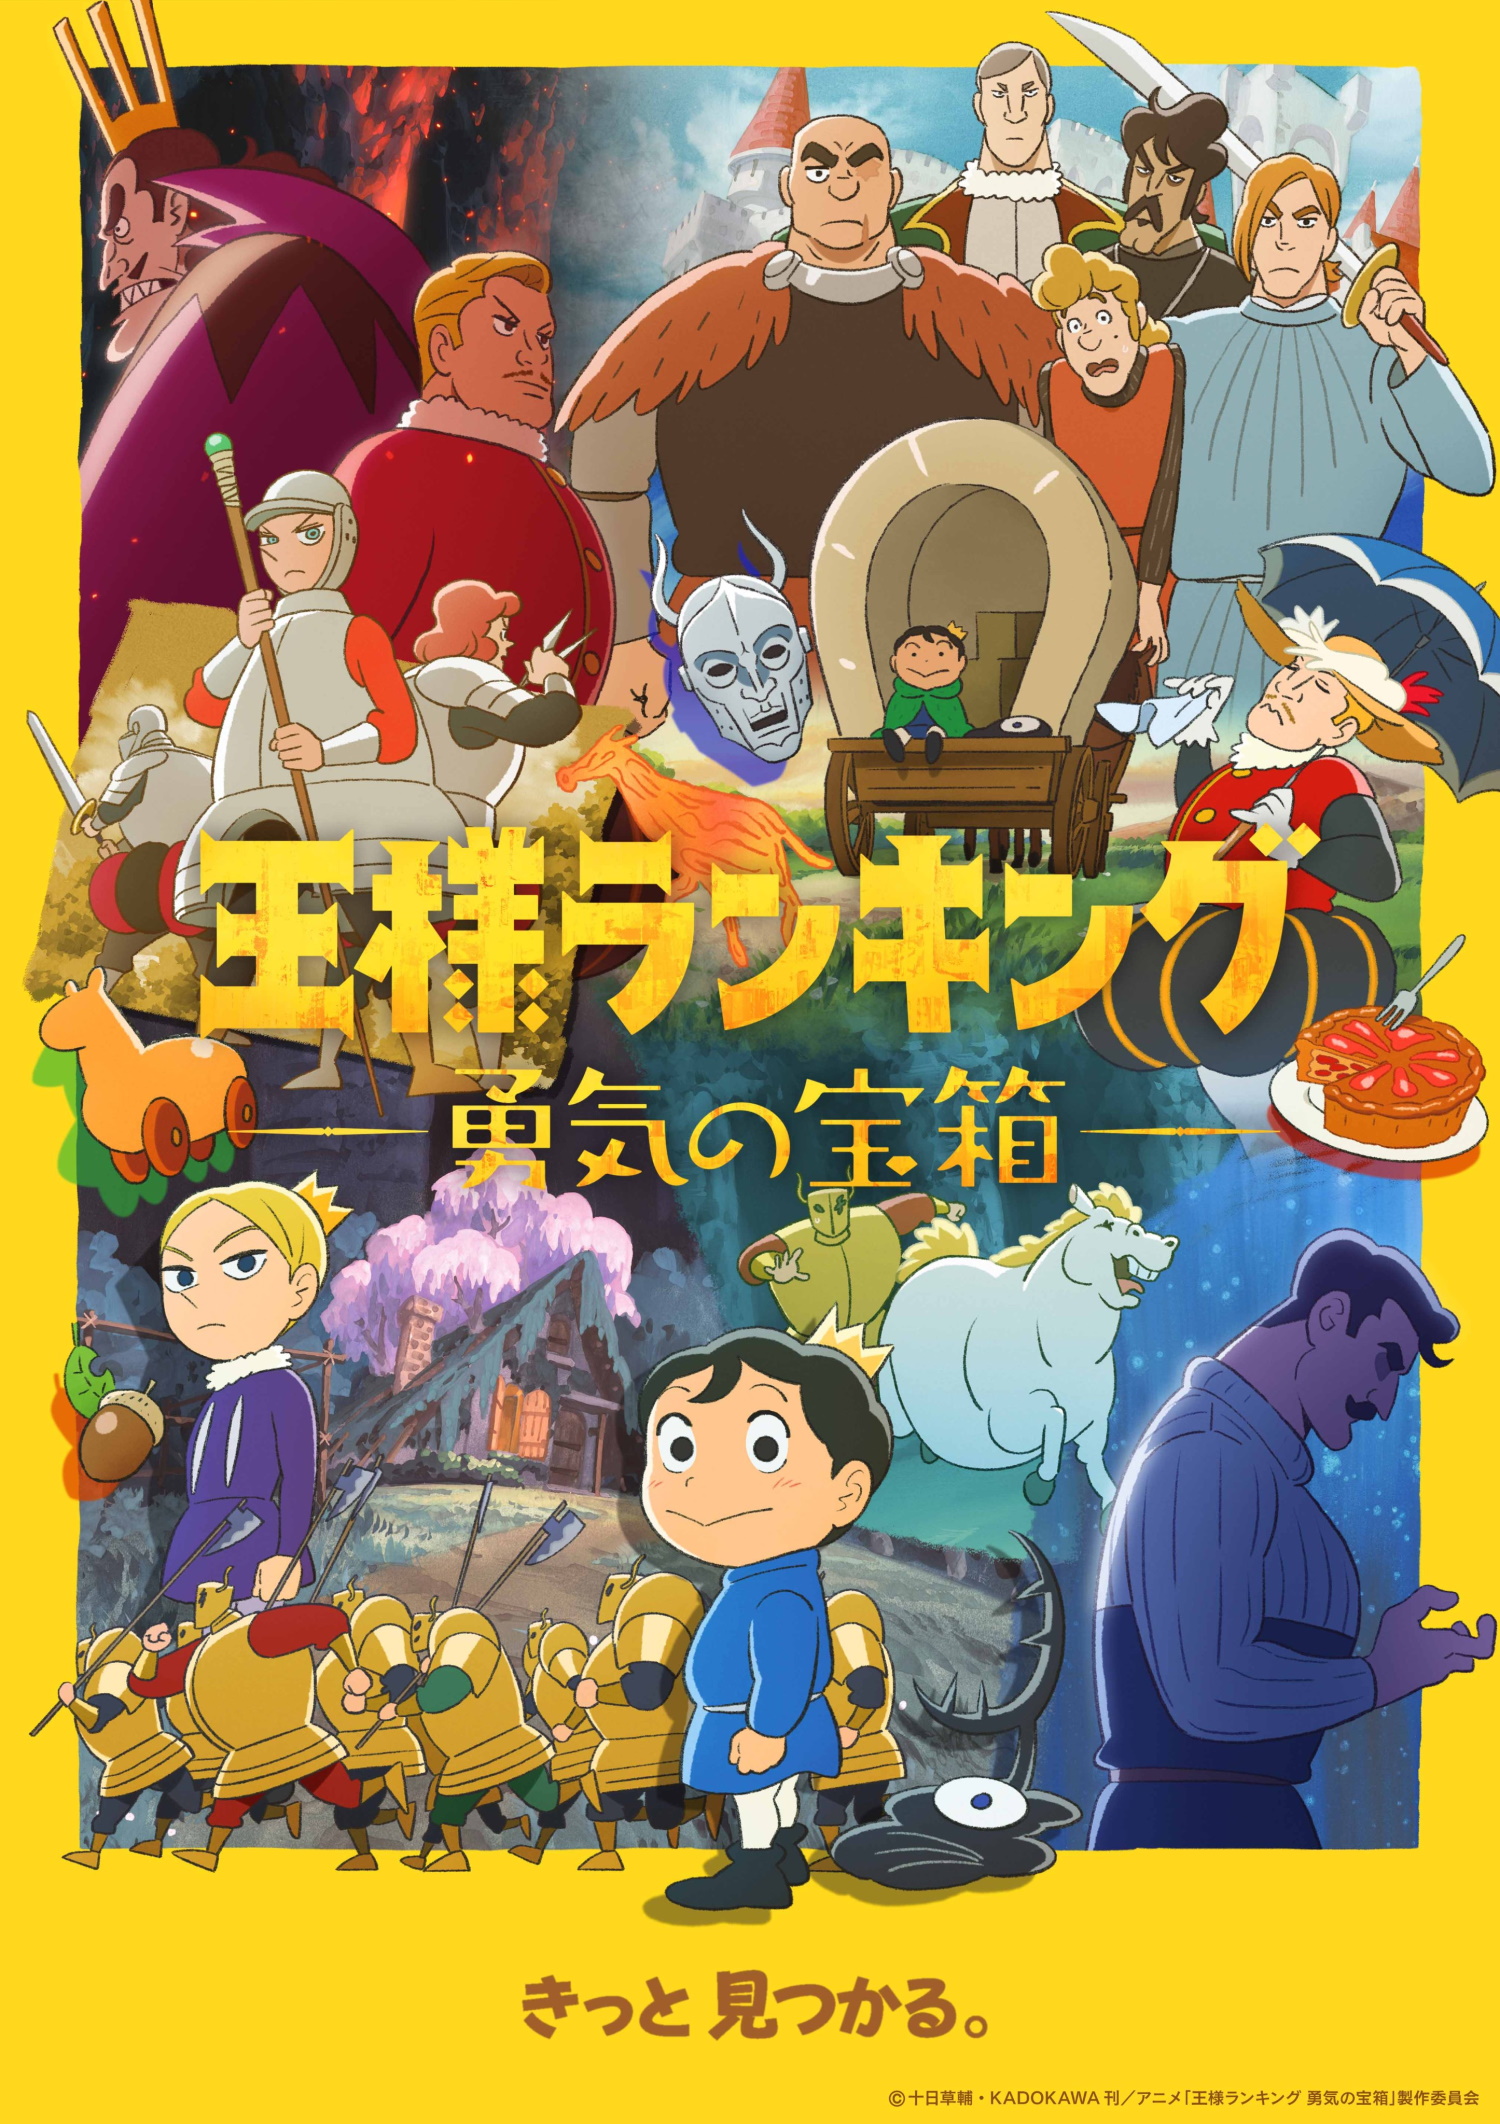 アニメ「王様ランキング 勇気の宝箱」は本日4月13日より放送開始